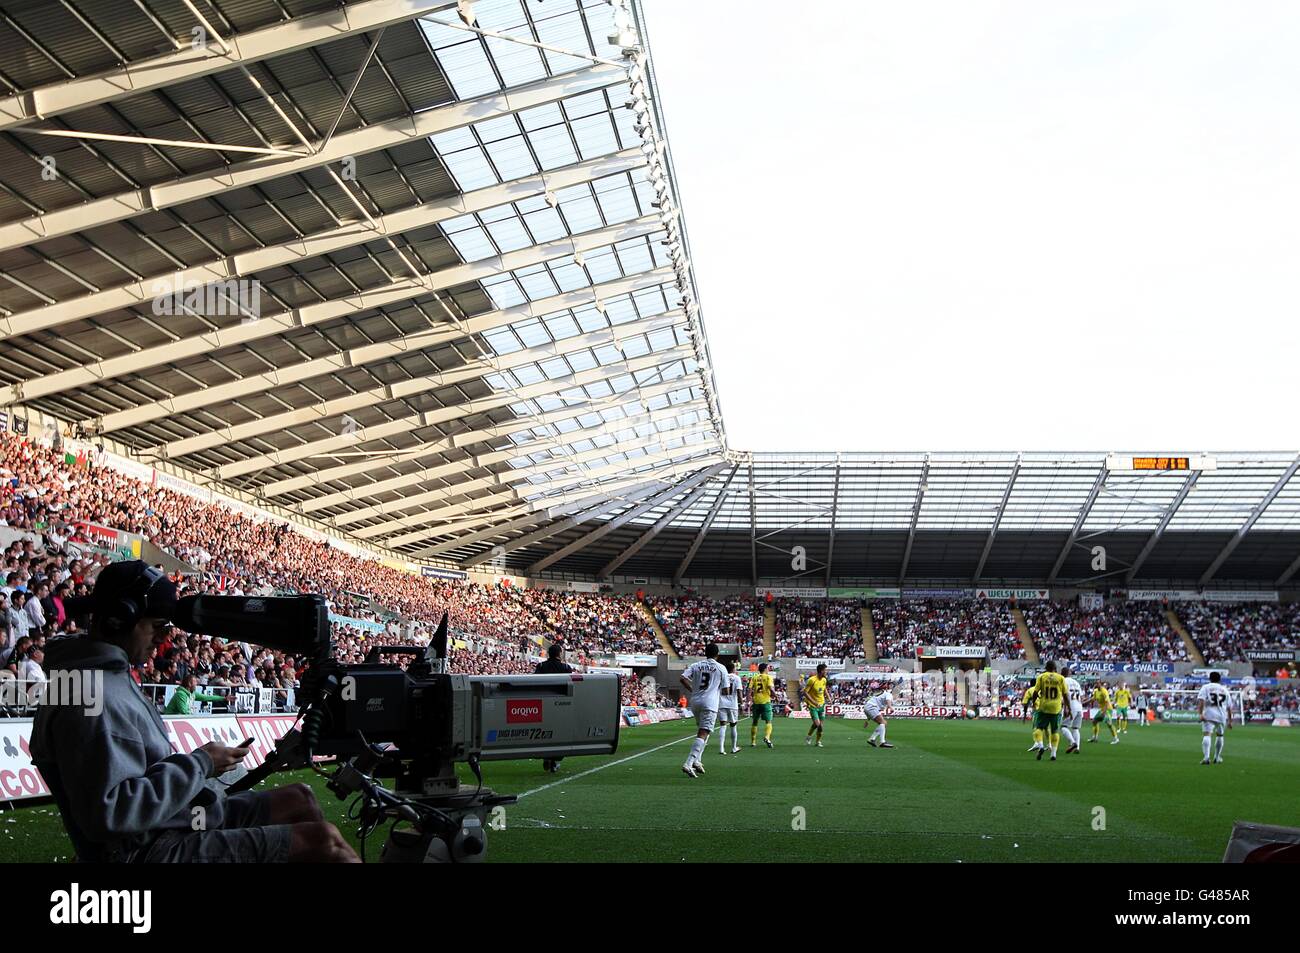 Calcio - campionato della Lega di Calcio di Npower - Swansea City v Norwich City - Liberty Stadium. Una telecamera filma la partita Foto Stock